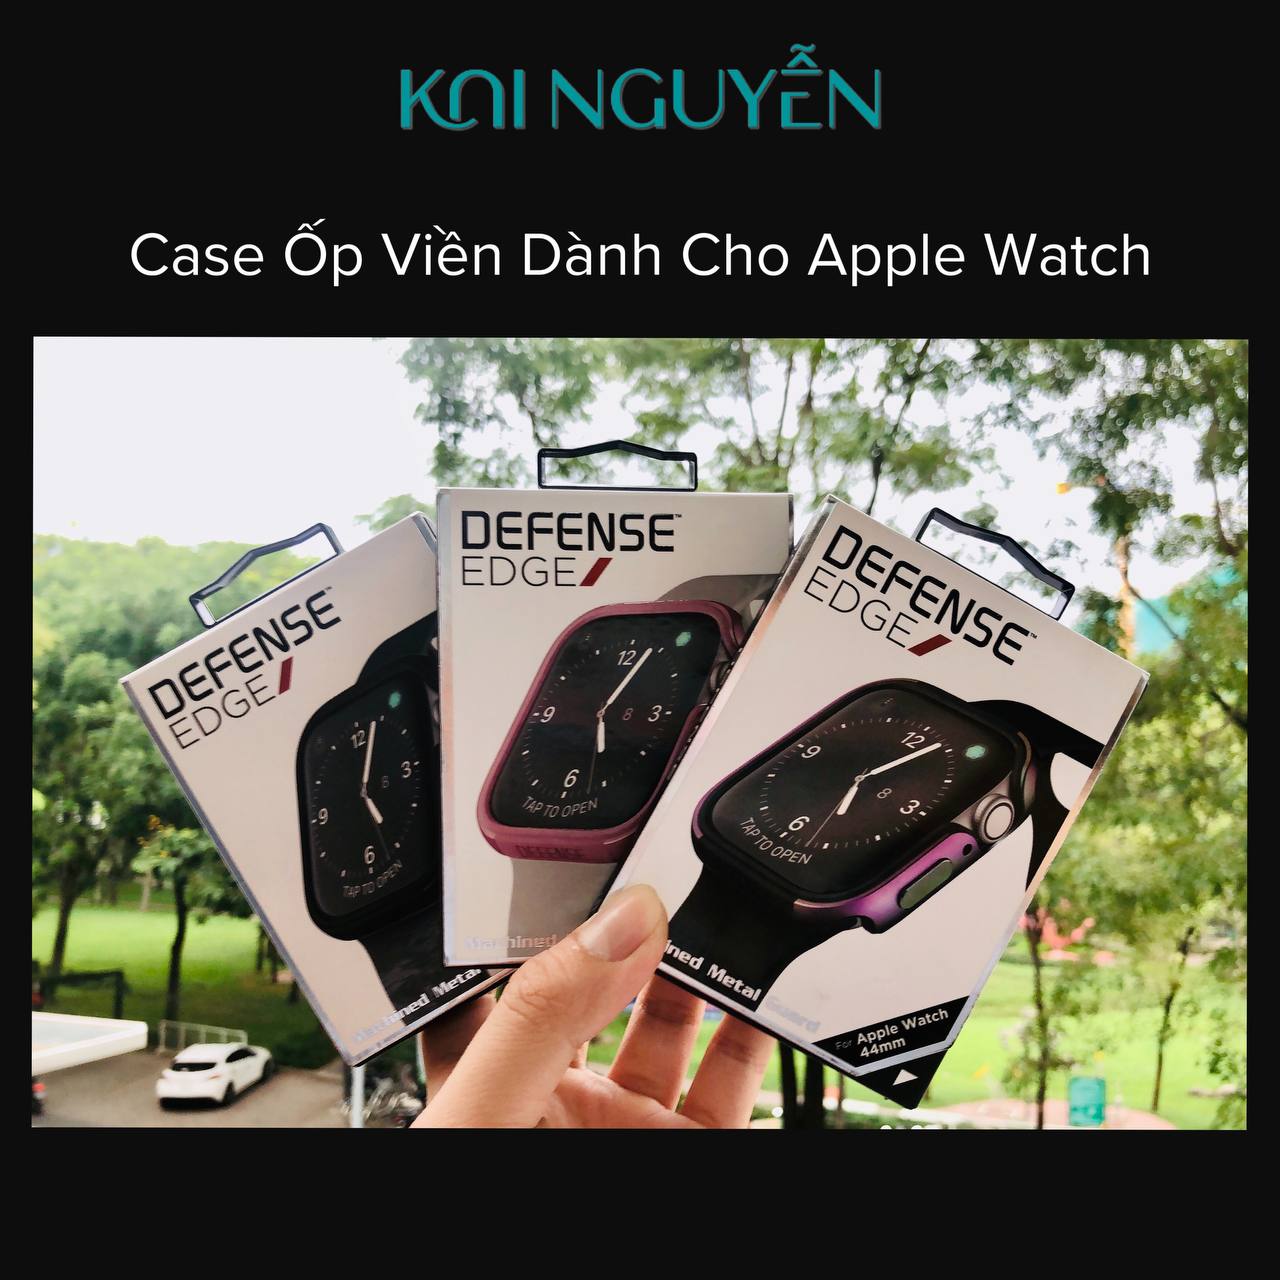 Ốp Viền Đồng Hồ Apple Watch XDoria Defense Dành cho Series 4/5/6/SE 44mm và 40mm - Hàng Chính Hãng